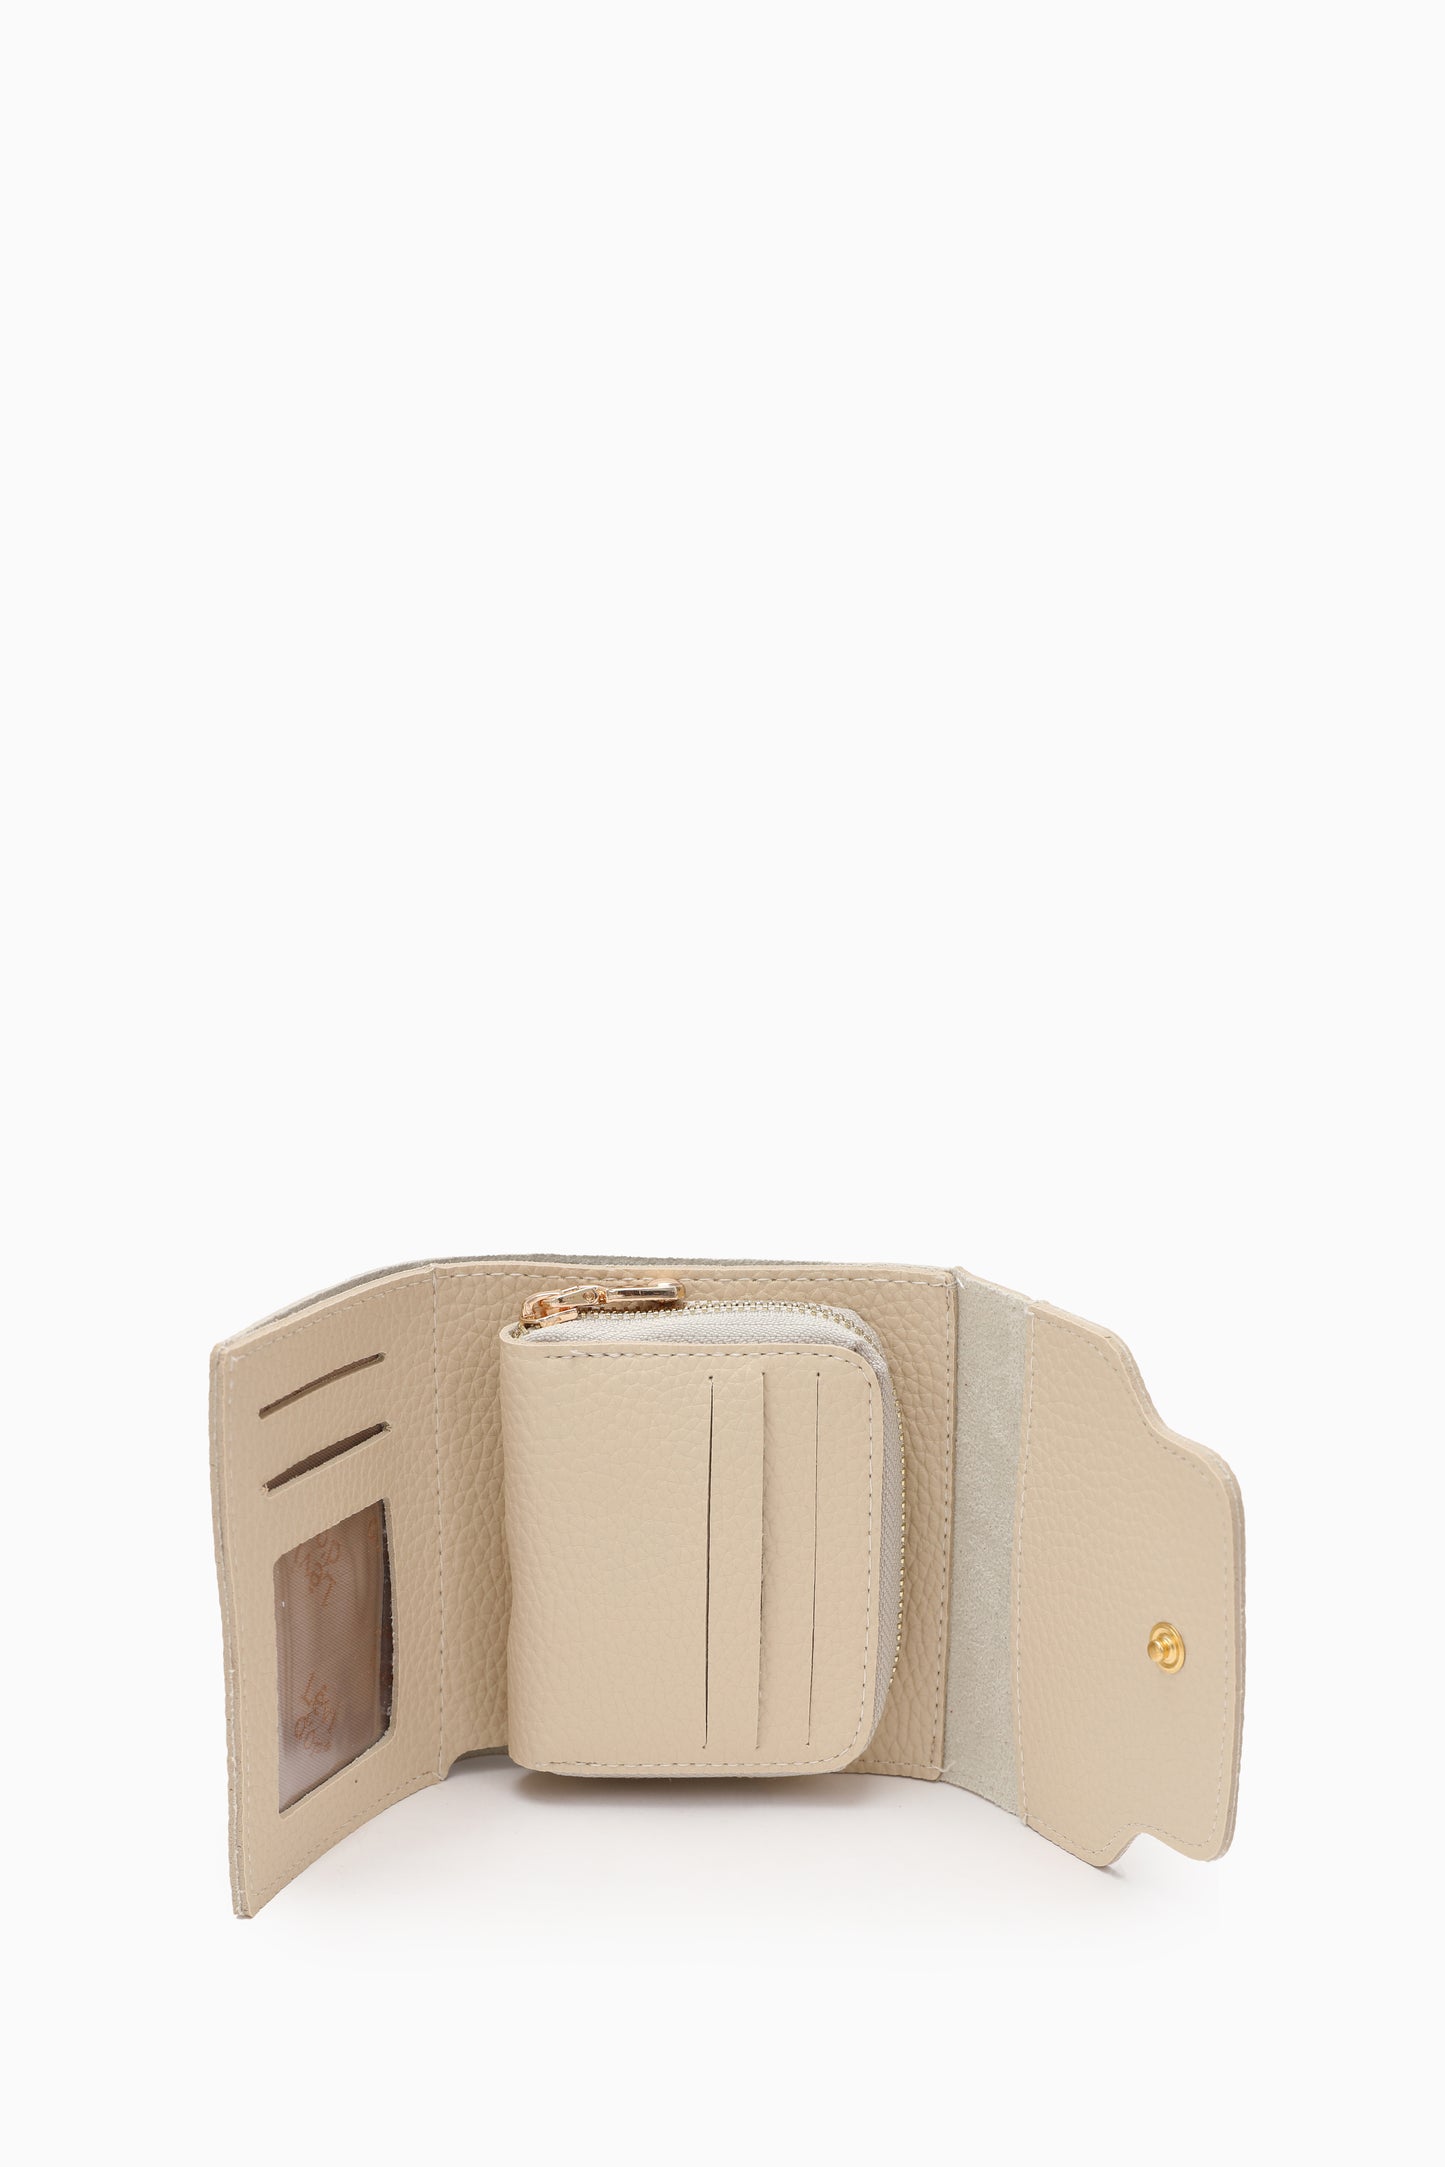 Card wallet -21037- Beige - bakkaclothing